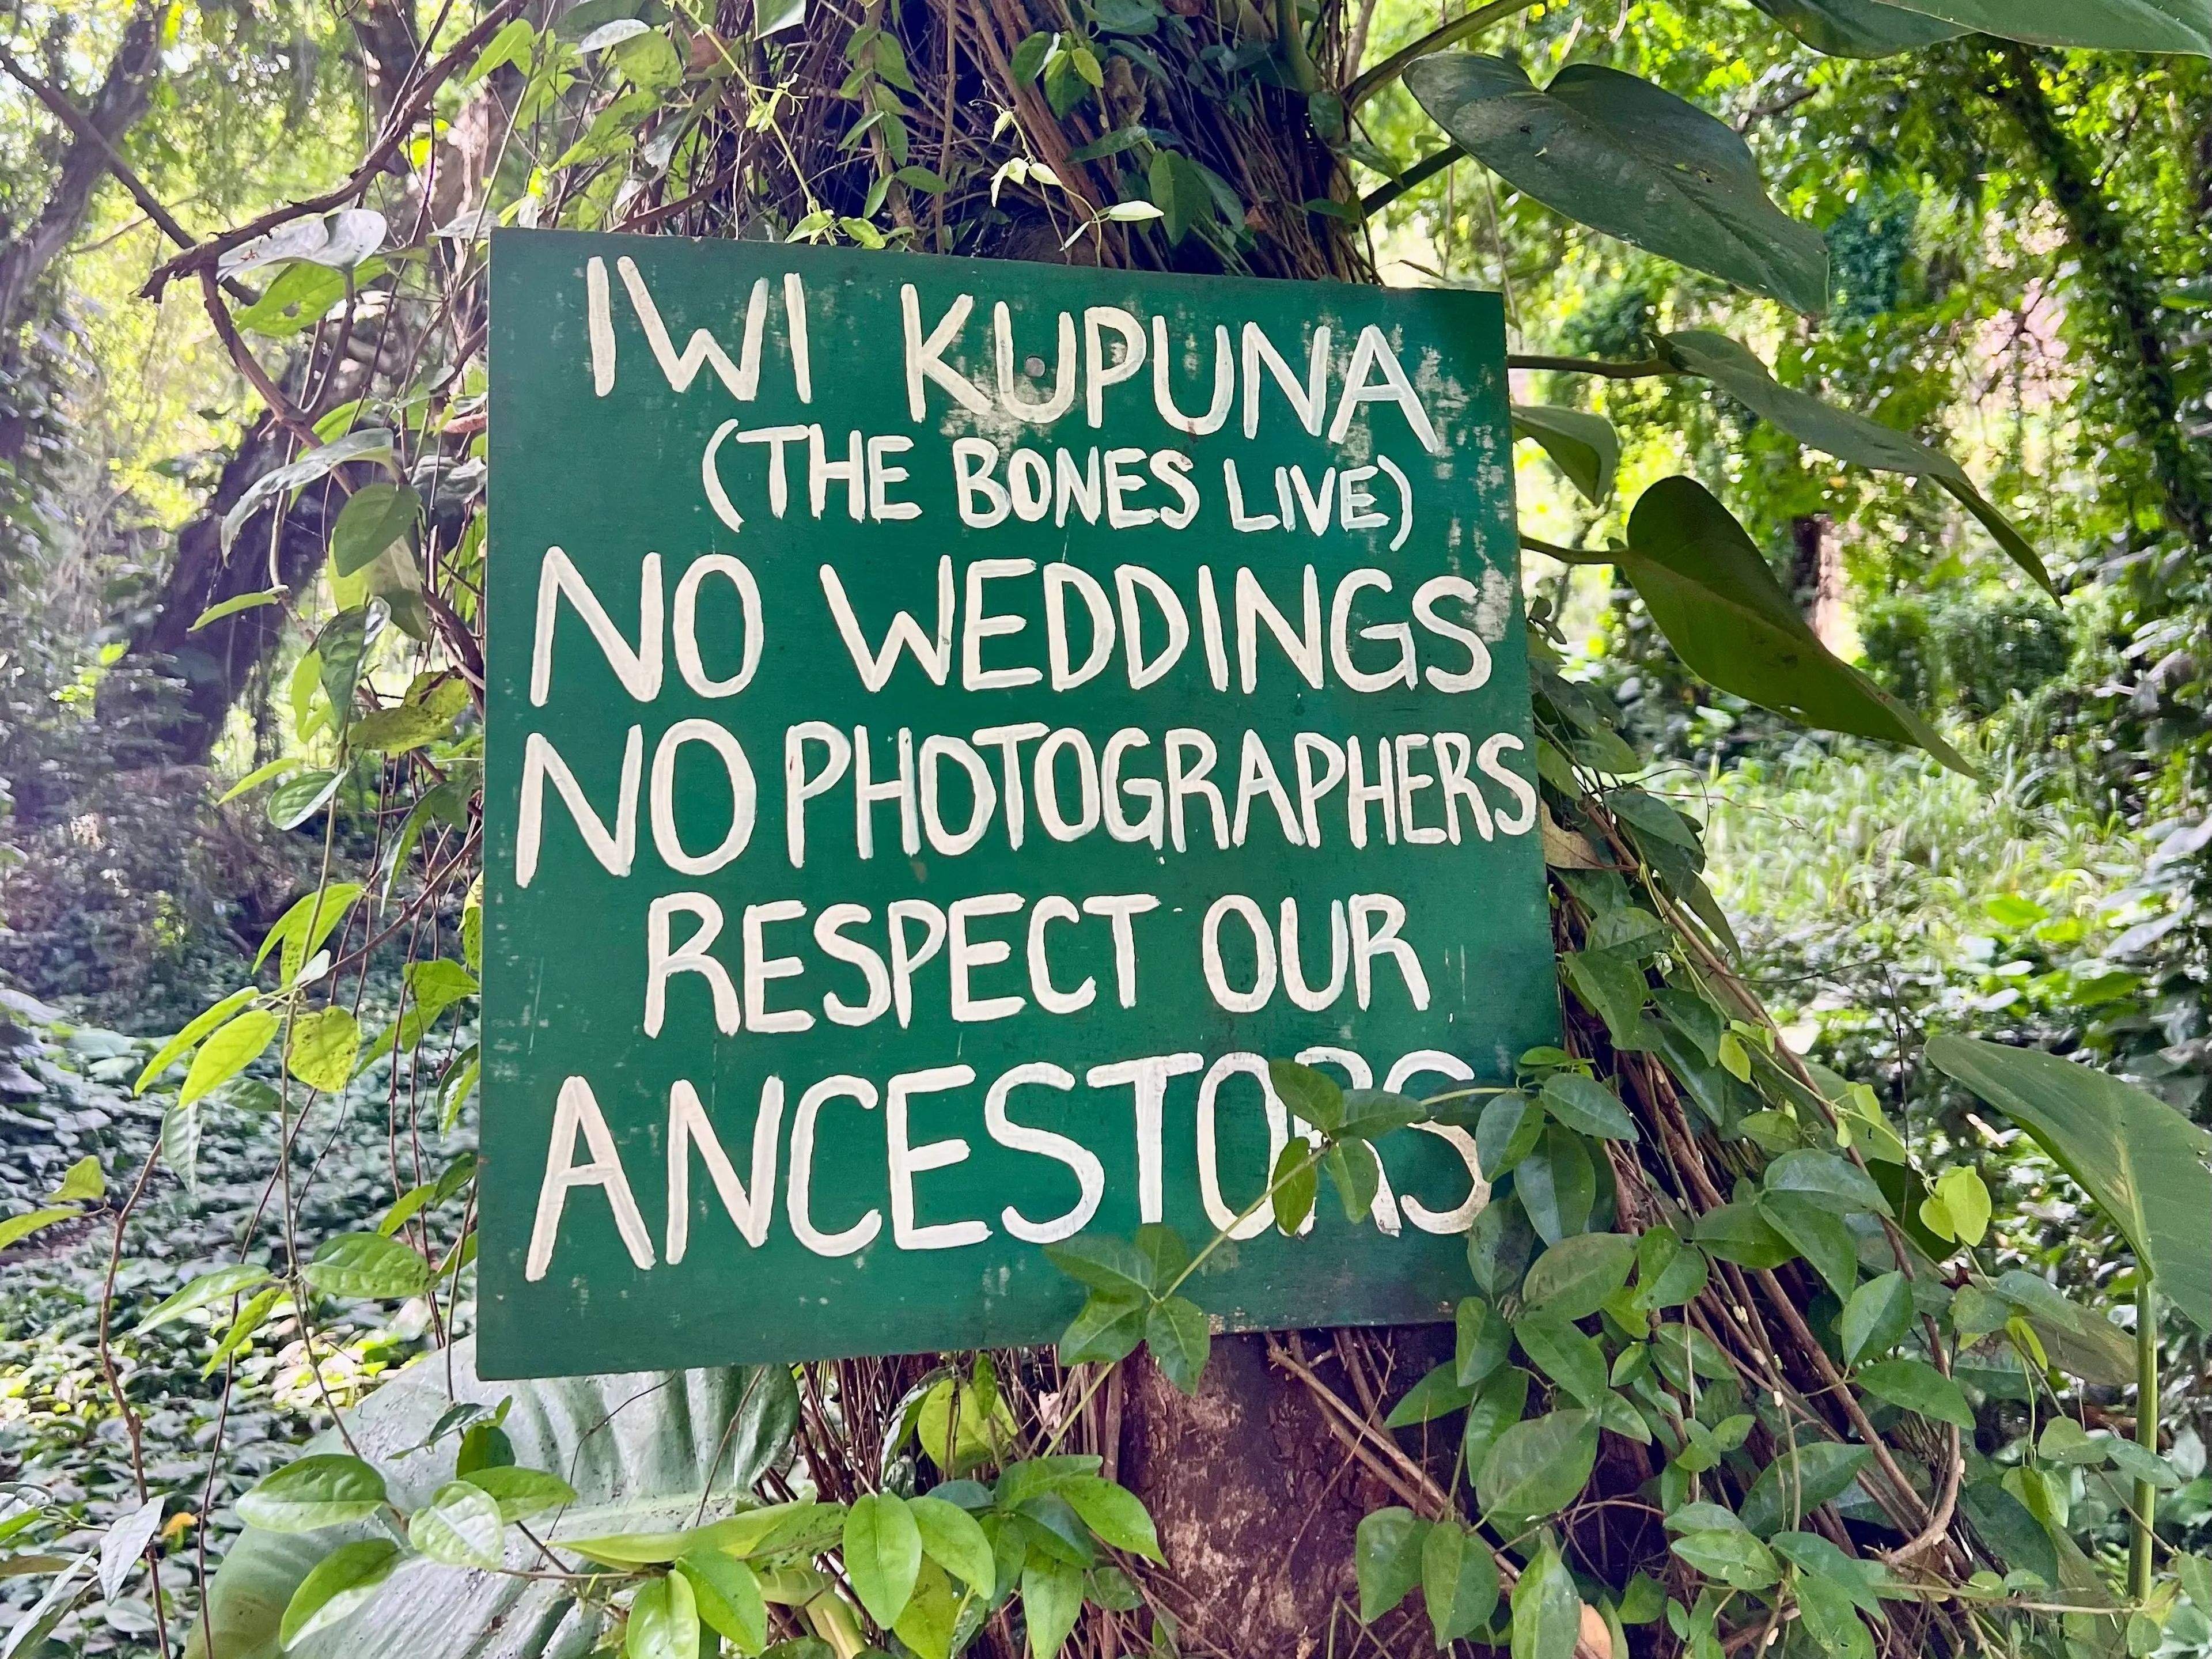 La señalización en la bahía de Honolua da instrucciones sobre cómo respetar la tierra y los antepasados hawaianos que están enterrados allí.